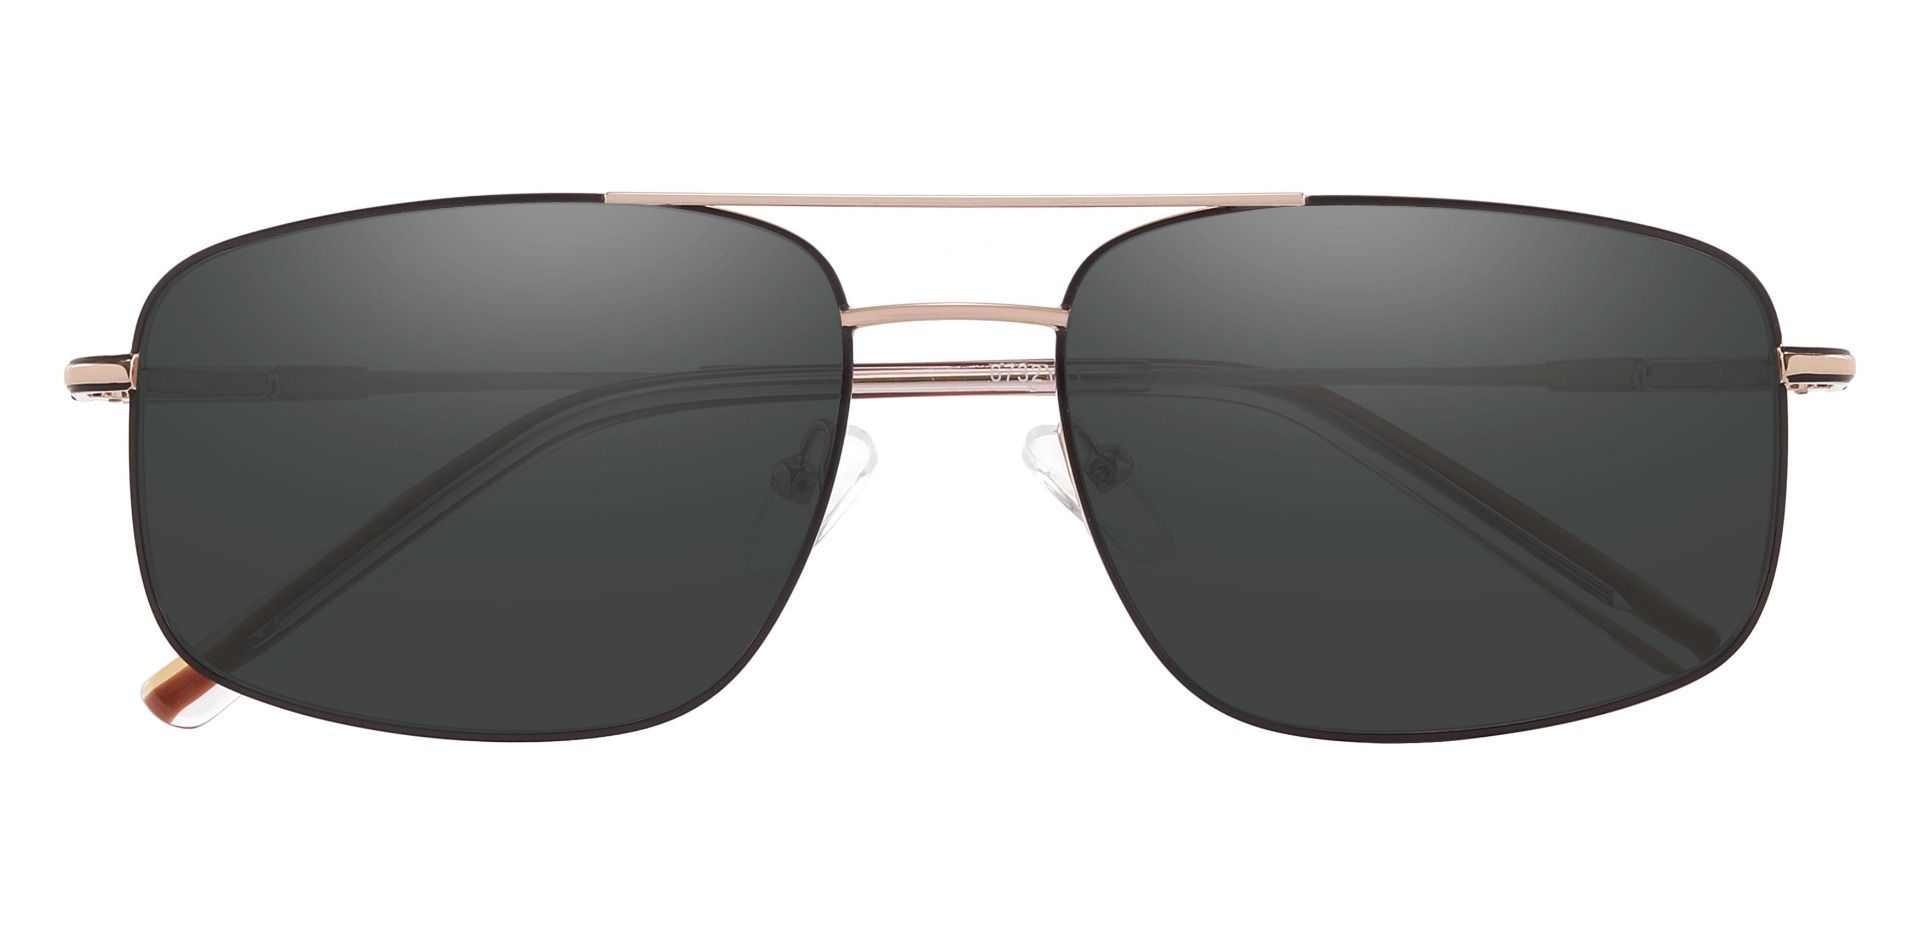 Turner Aviator Progressive Sunglasses - Gold Frame With Gray Lenses